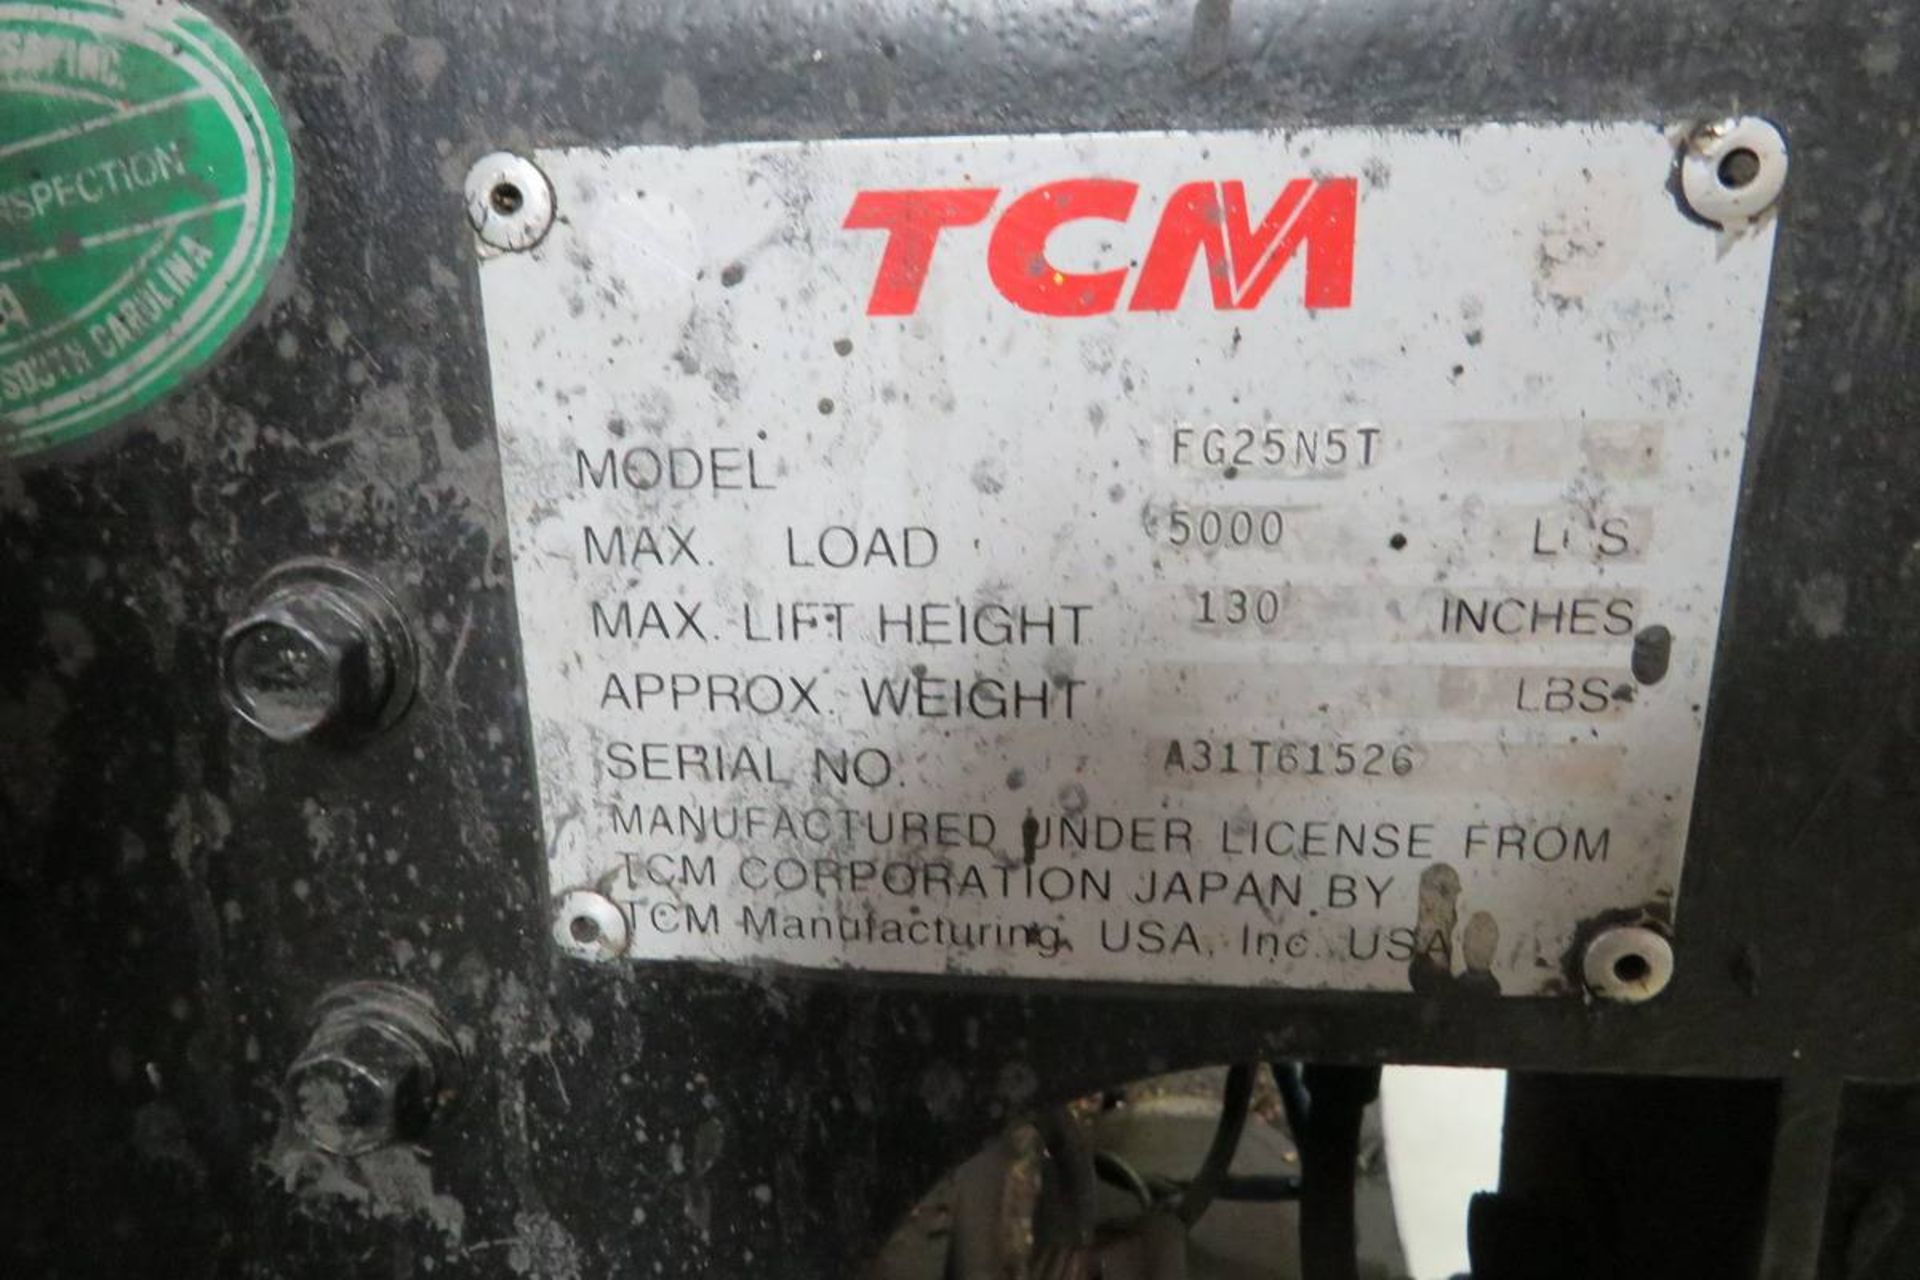 TCM FG25N5T Propane Forklift - Image 7 of 7